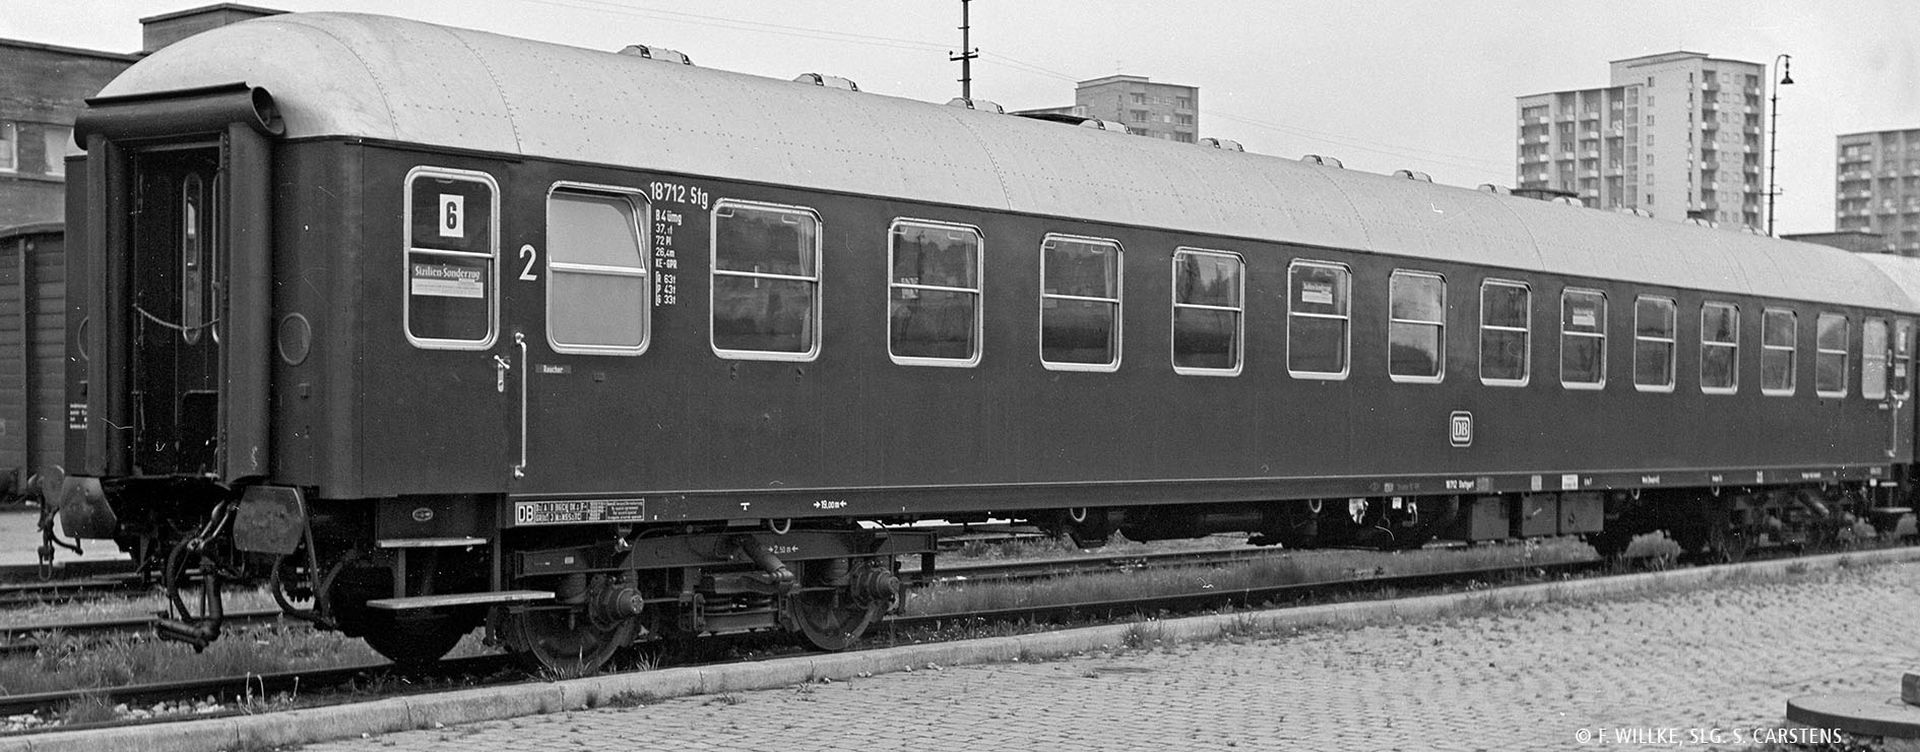 Brawa 58133 - Schnellzugwagen Bm232, DB, Ep.IV, mit Beleuchtung, AC